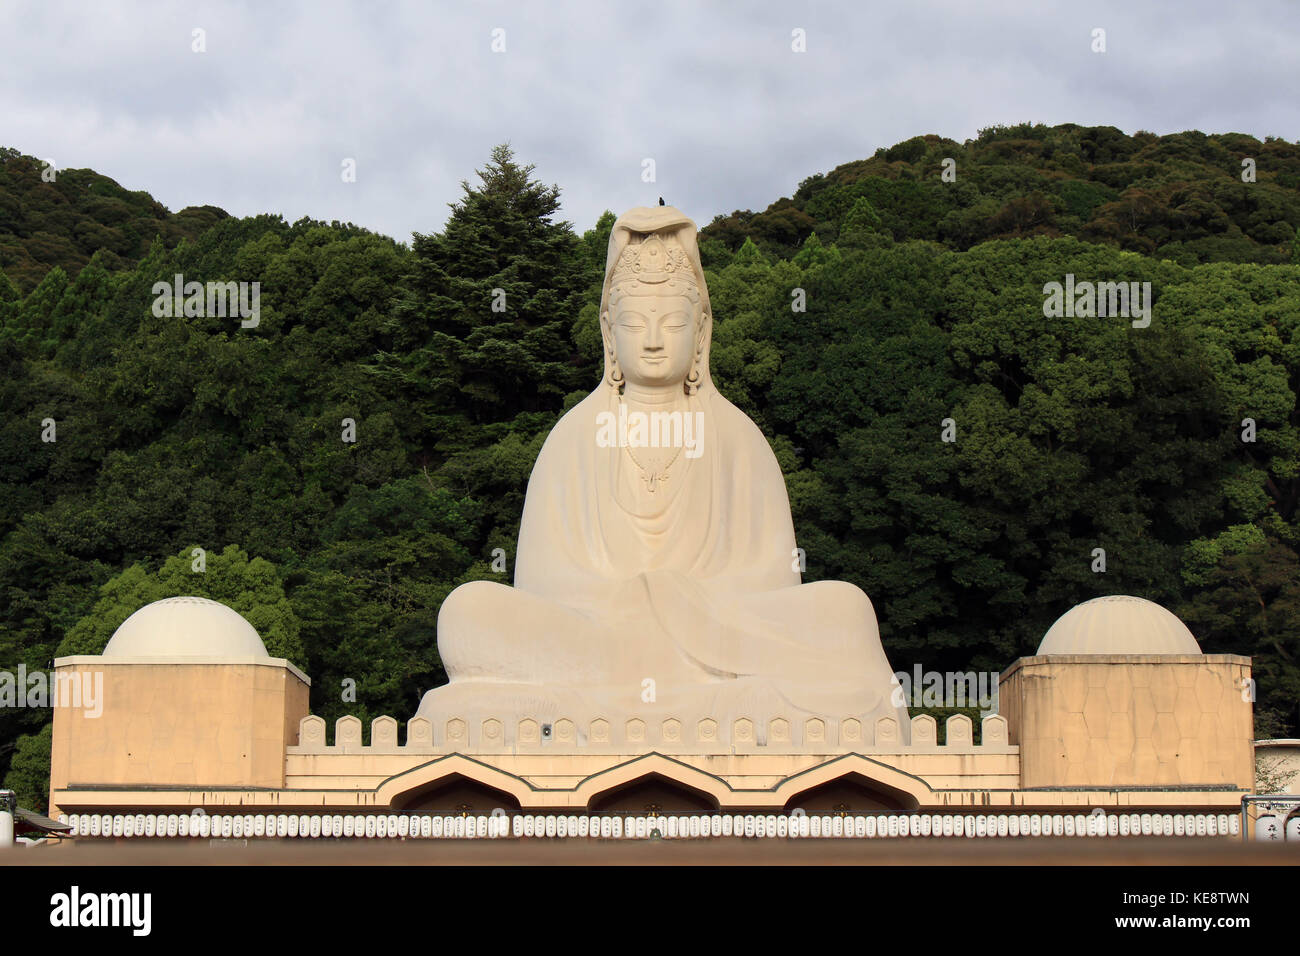 Il ryozen kannon in kyoto. la statua è di 24 m di altezza. è un memoriale di guerra per commemorare le vittime della guerra della guerra del Pacifico situato in kyot orientale Foto Stock